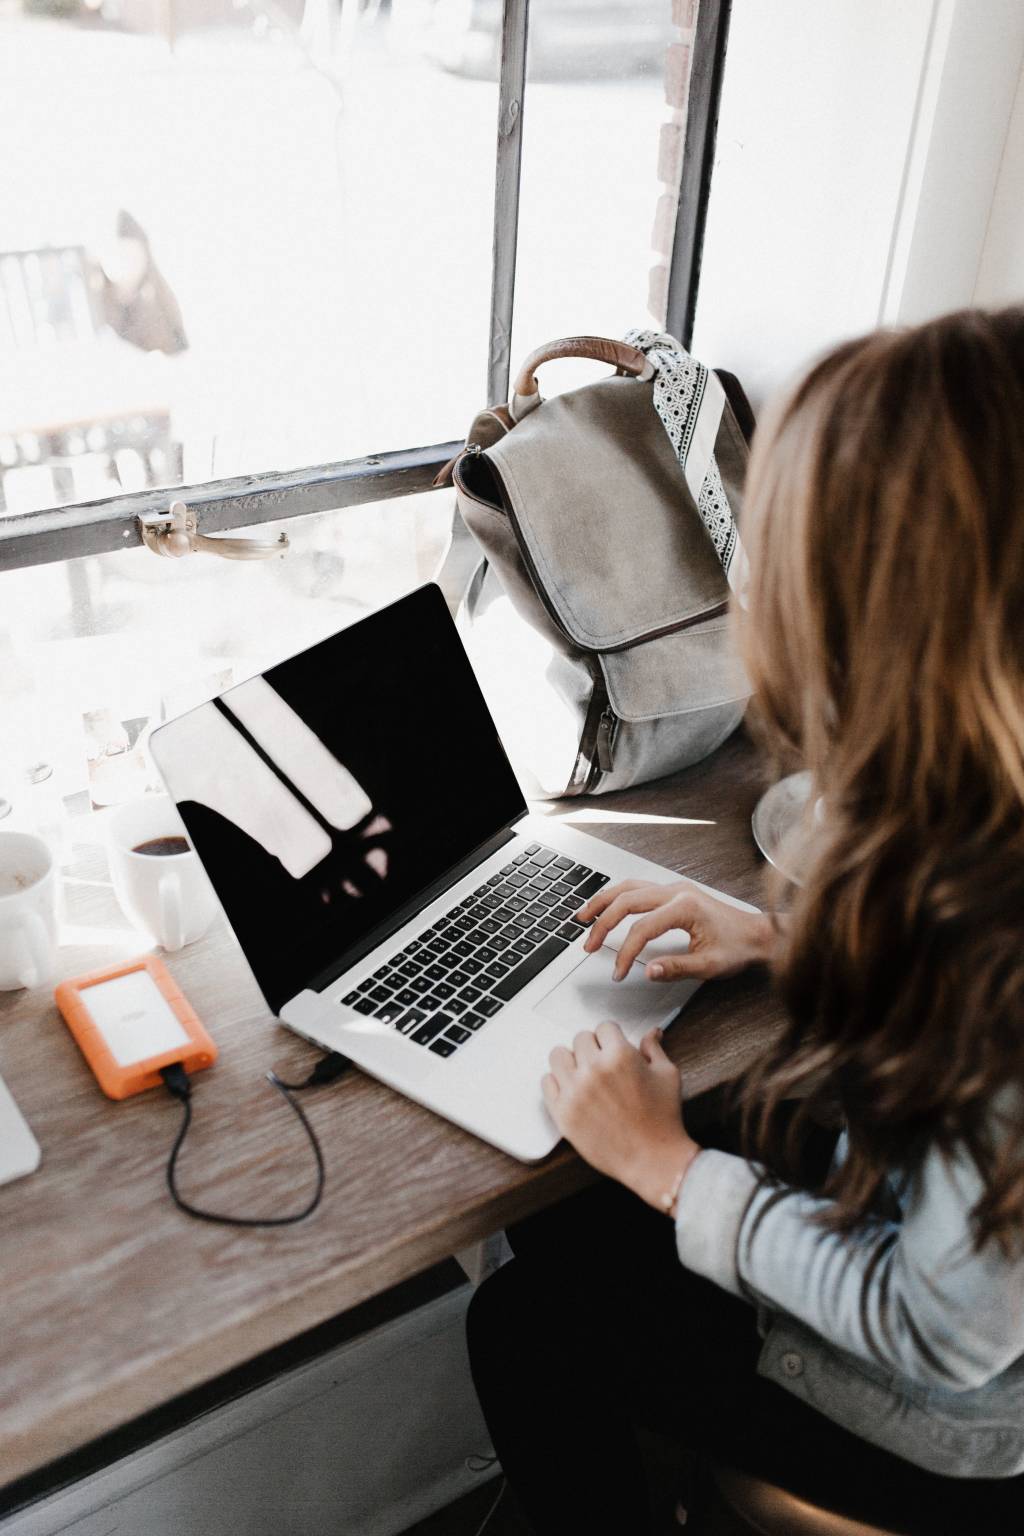 Uma mulher está trabalhando em um notebook. Sua mochila está na mesa, ao lado do computador.